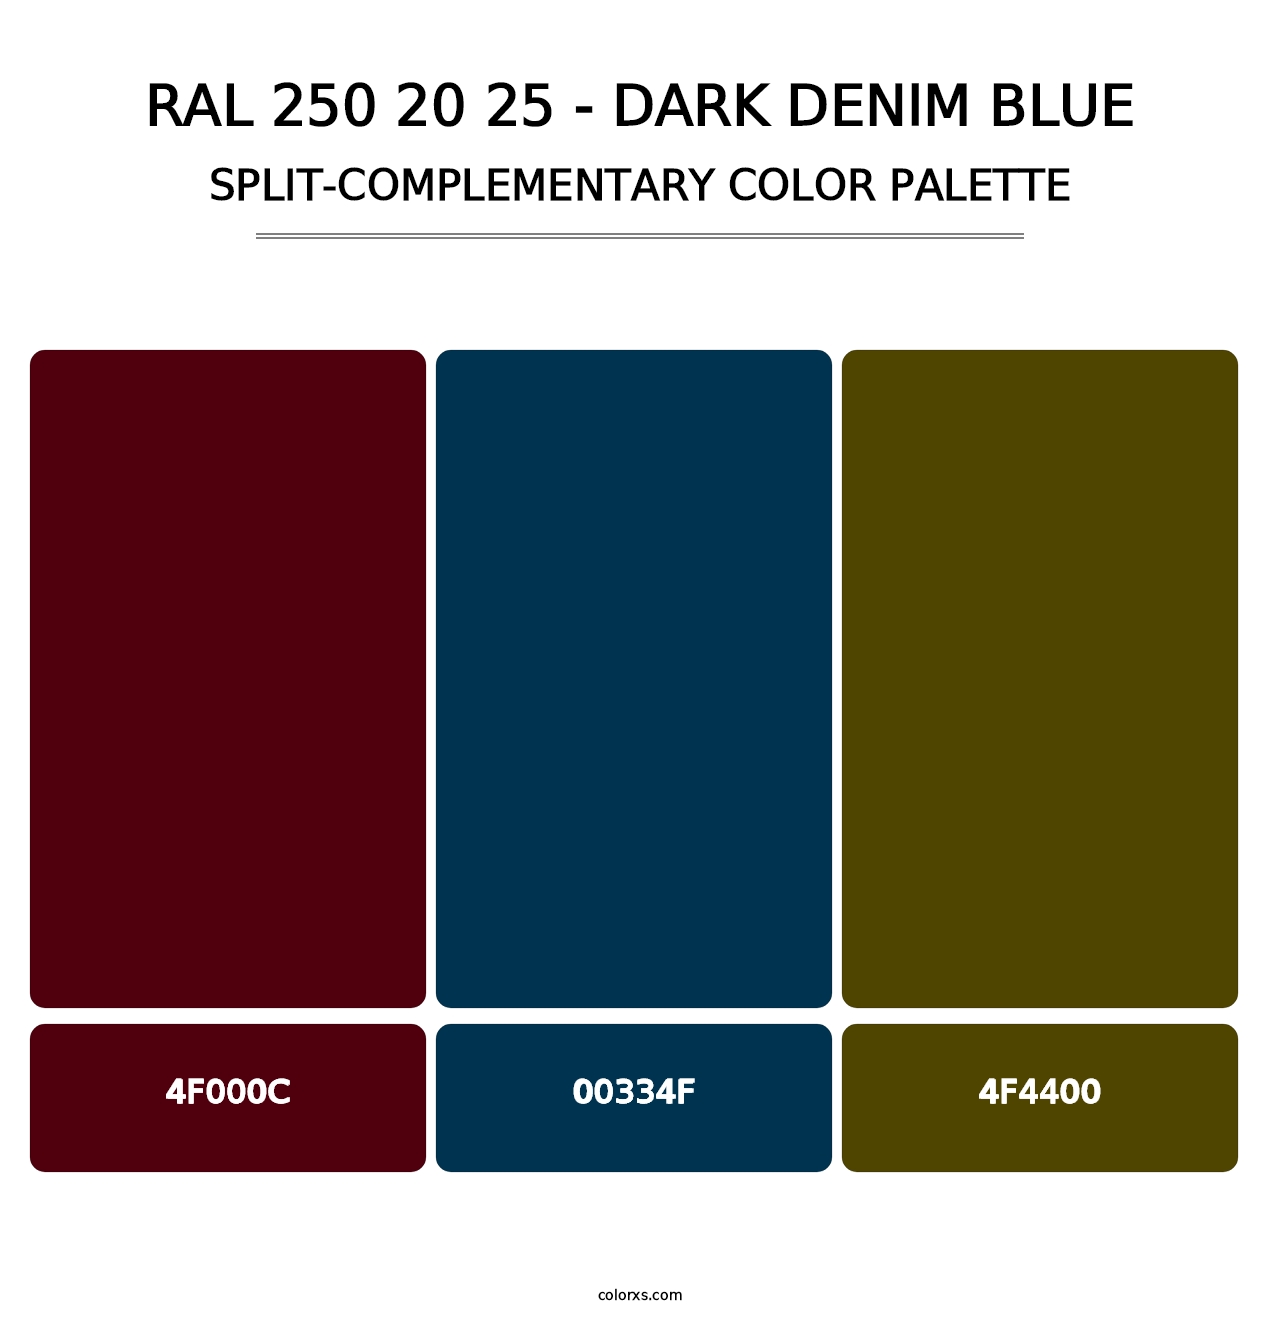 RAL 250 20 25 - Dark Denim Blue - Split-Complementary Color Palette